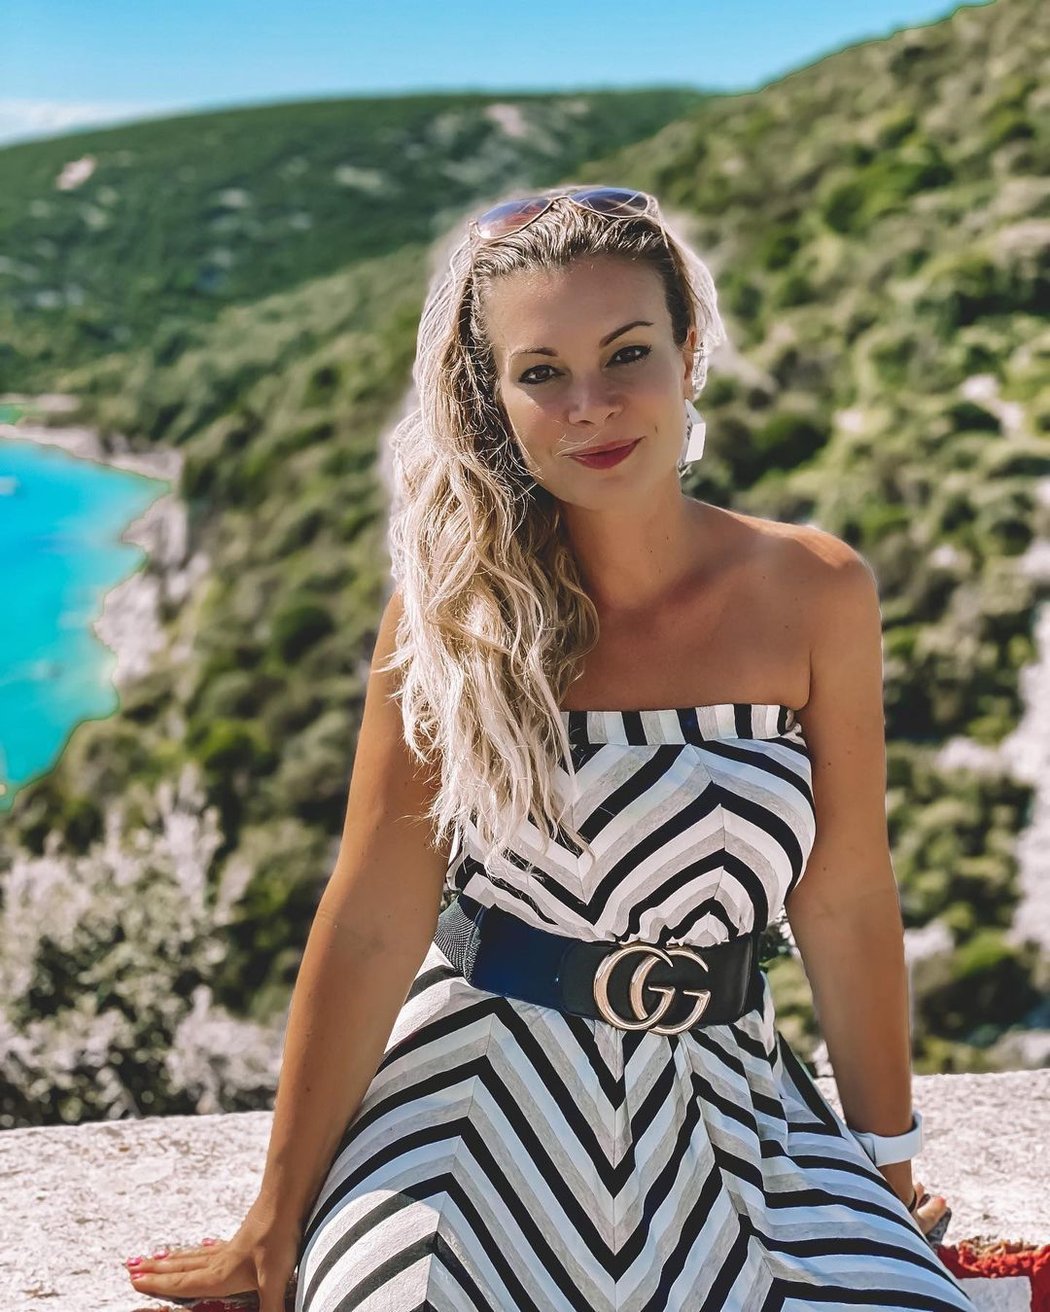 Bývalá česká modelka Kamila Persse je dlouholetou partnerkou někdejší fotbalové superstar a miliardáře Thomase Gravesena